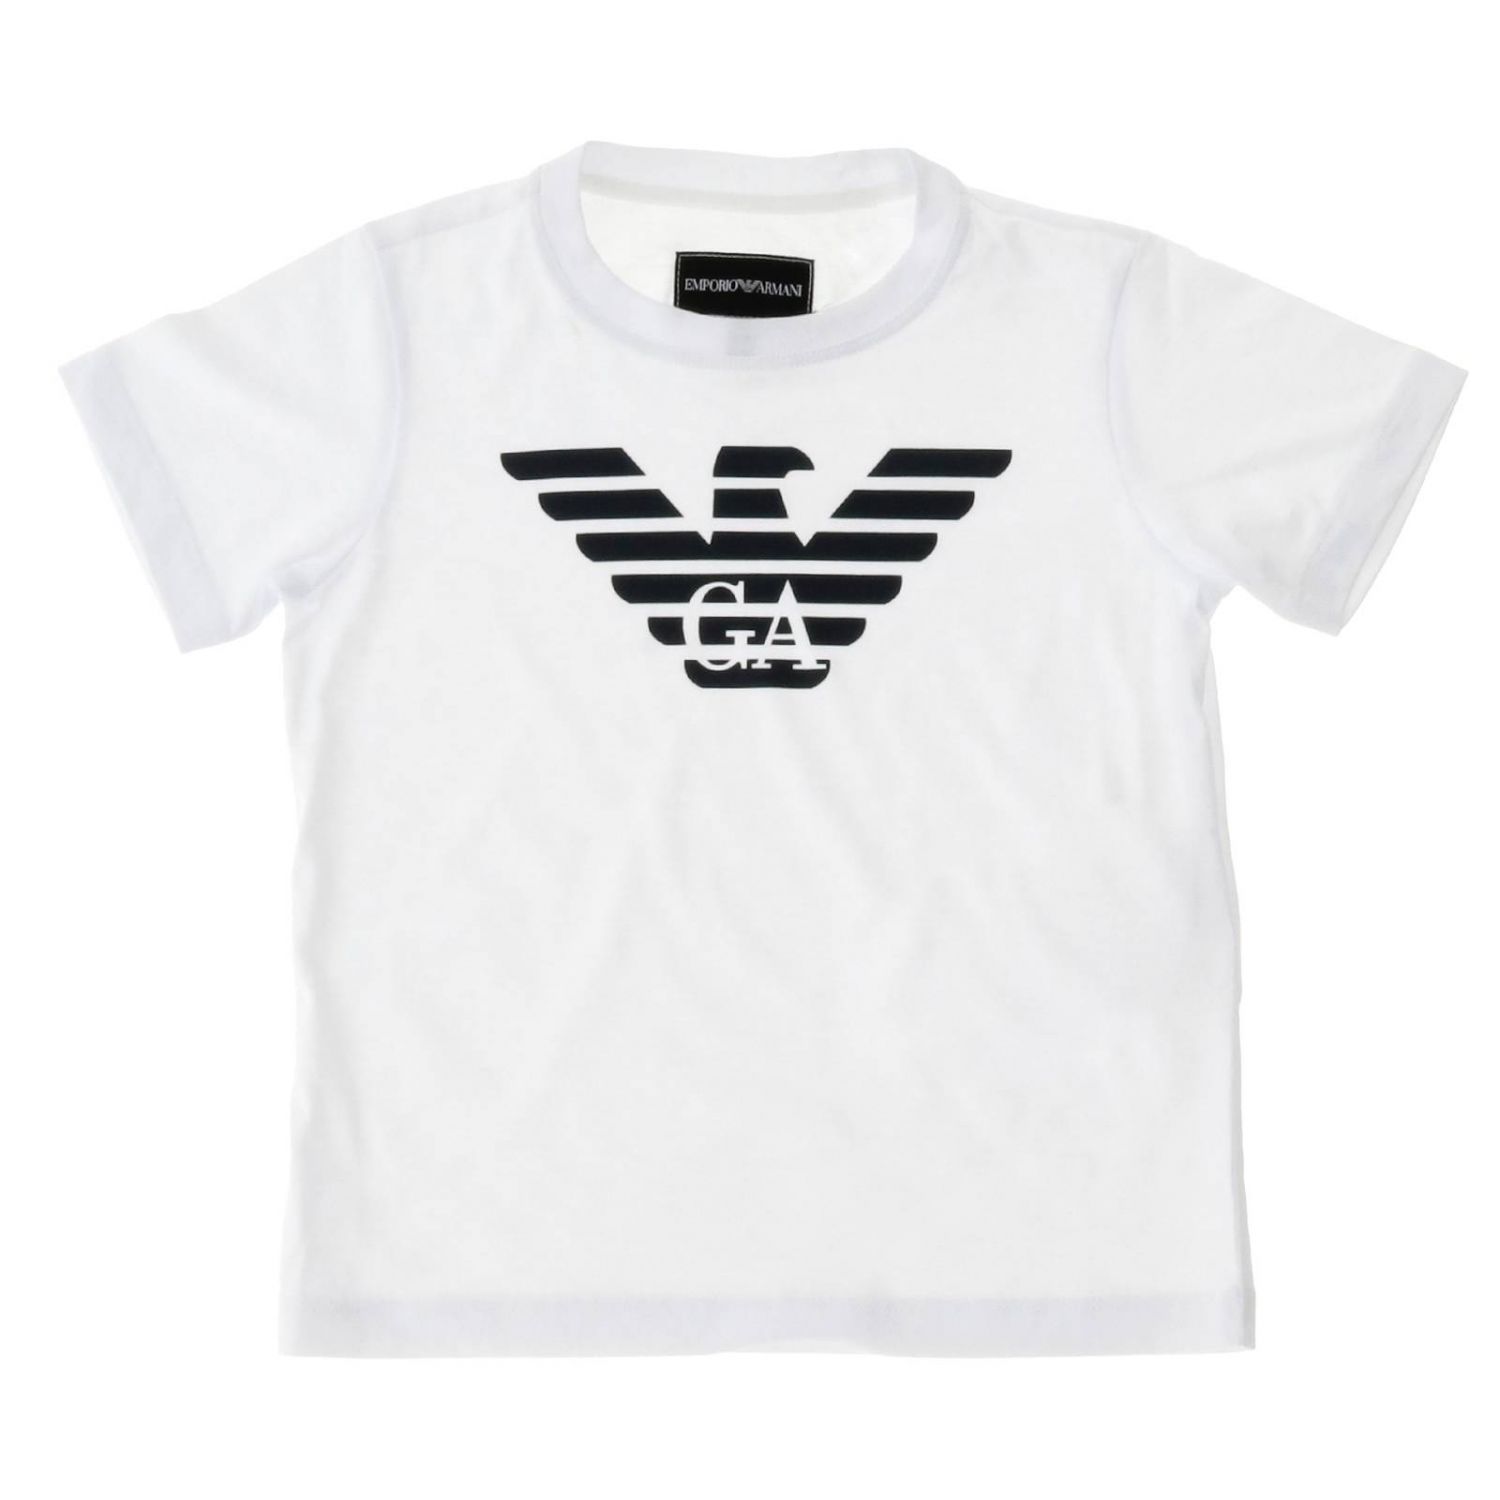 Emporio Armani Outlet: T-shirt kids - White | T-Shirt Emporio Armani ...